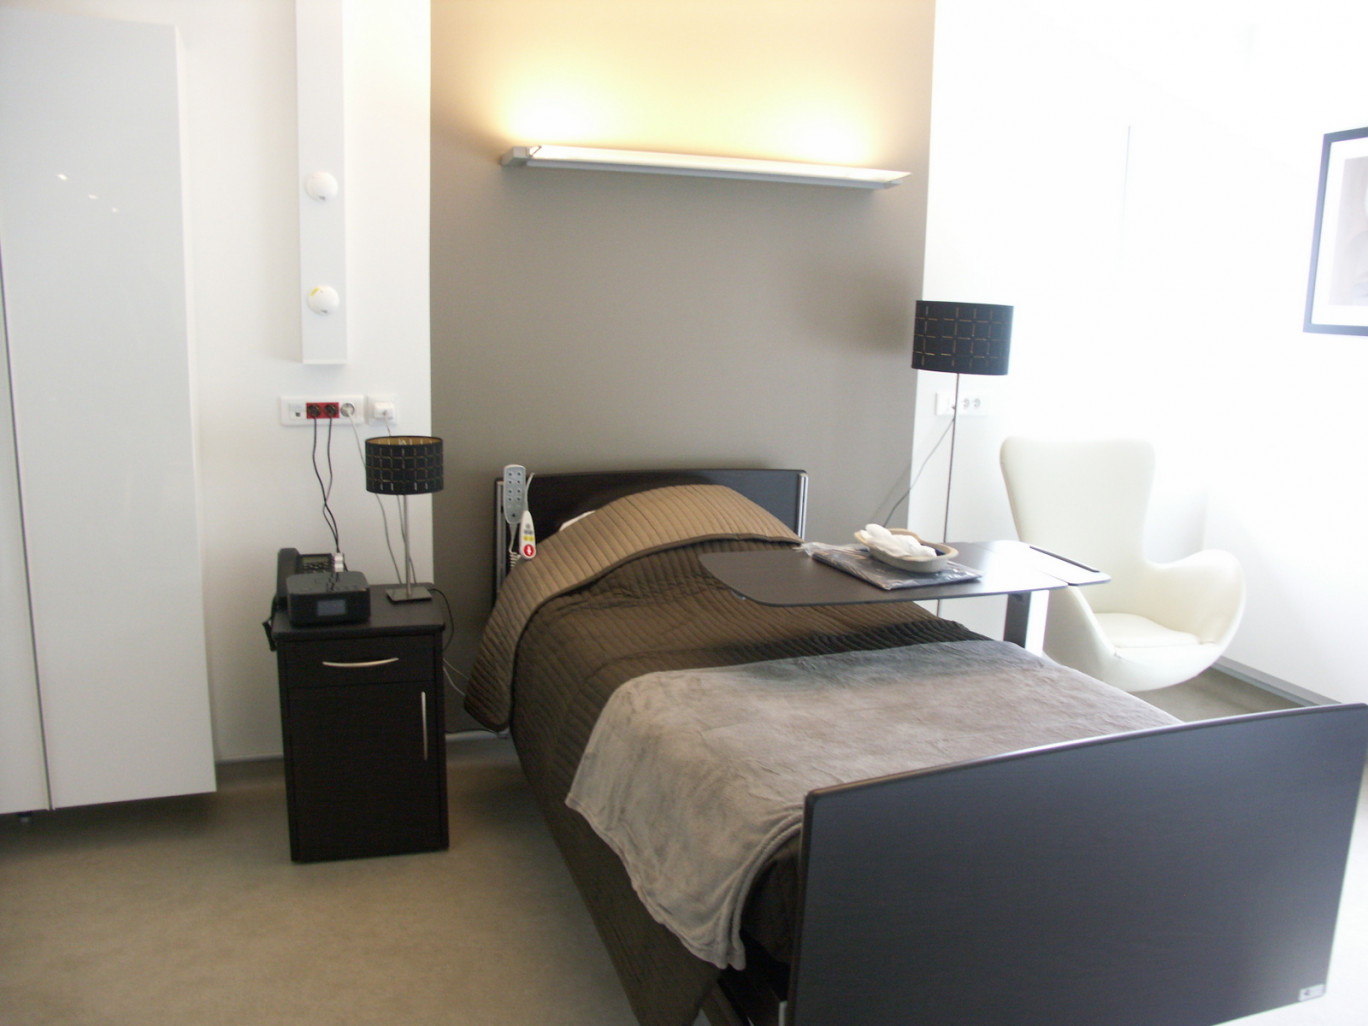 Décoration design et haut de gamme pour les chambres aussi.